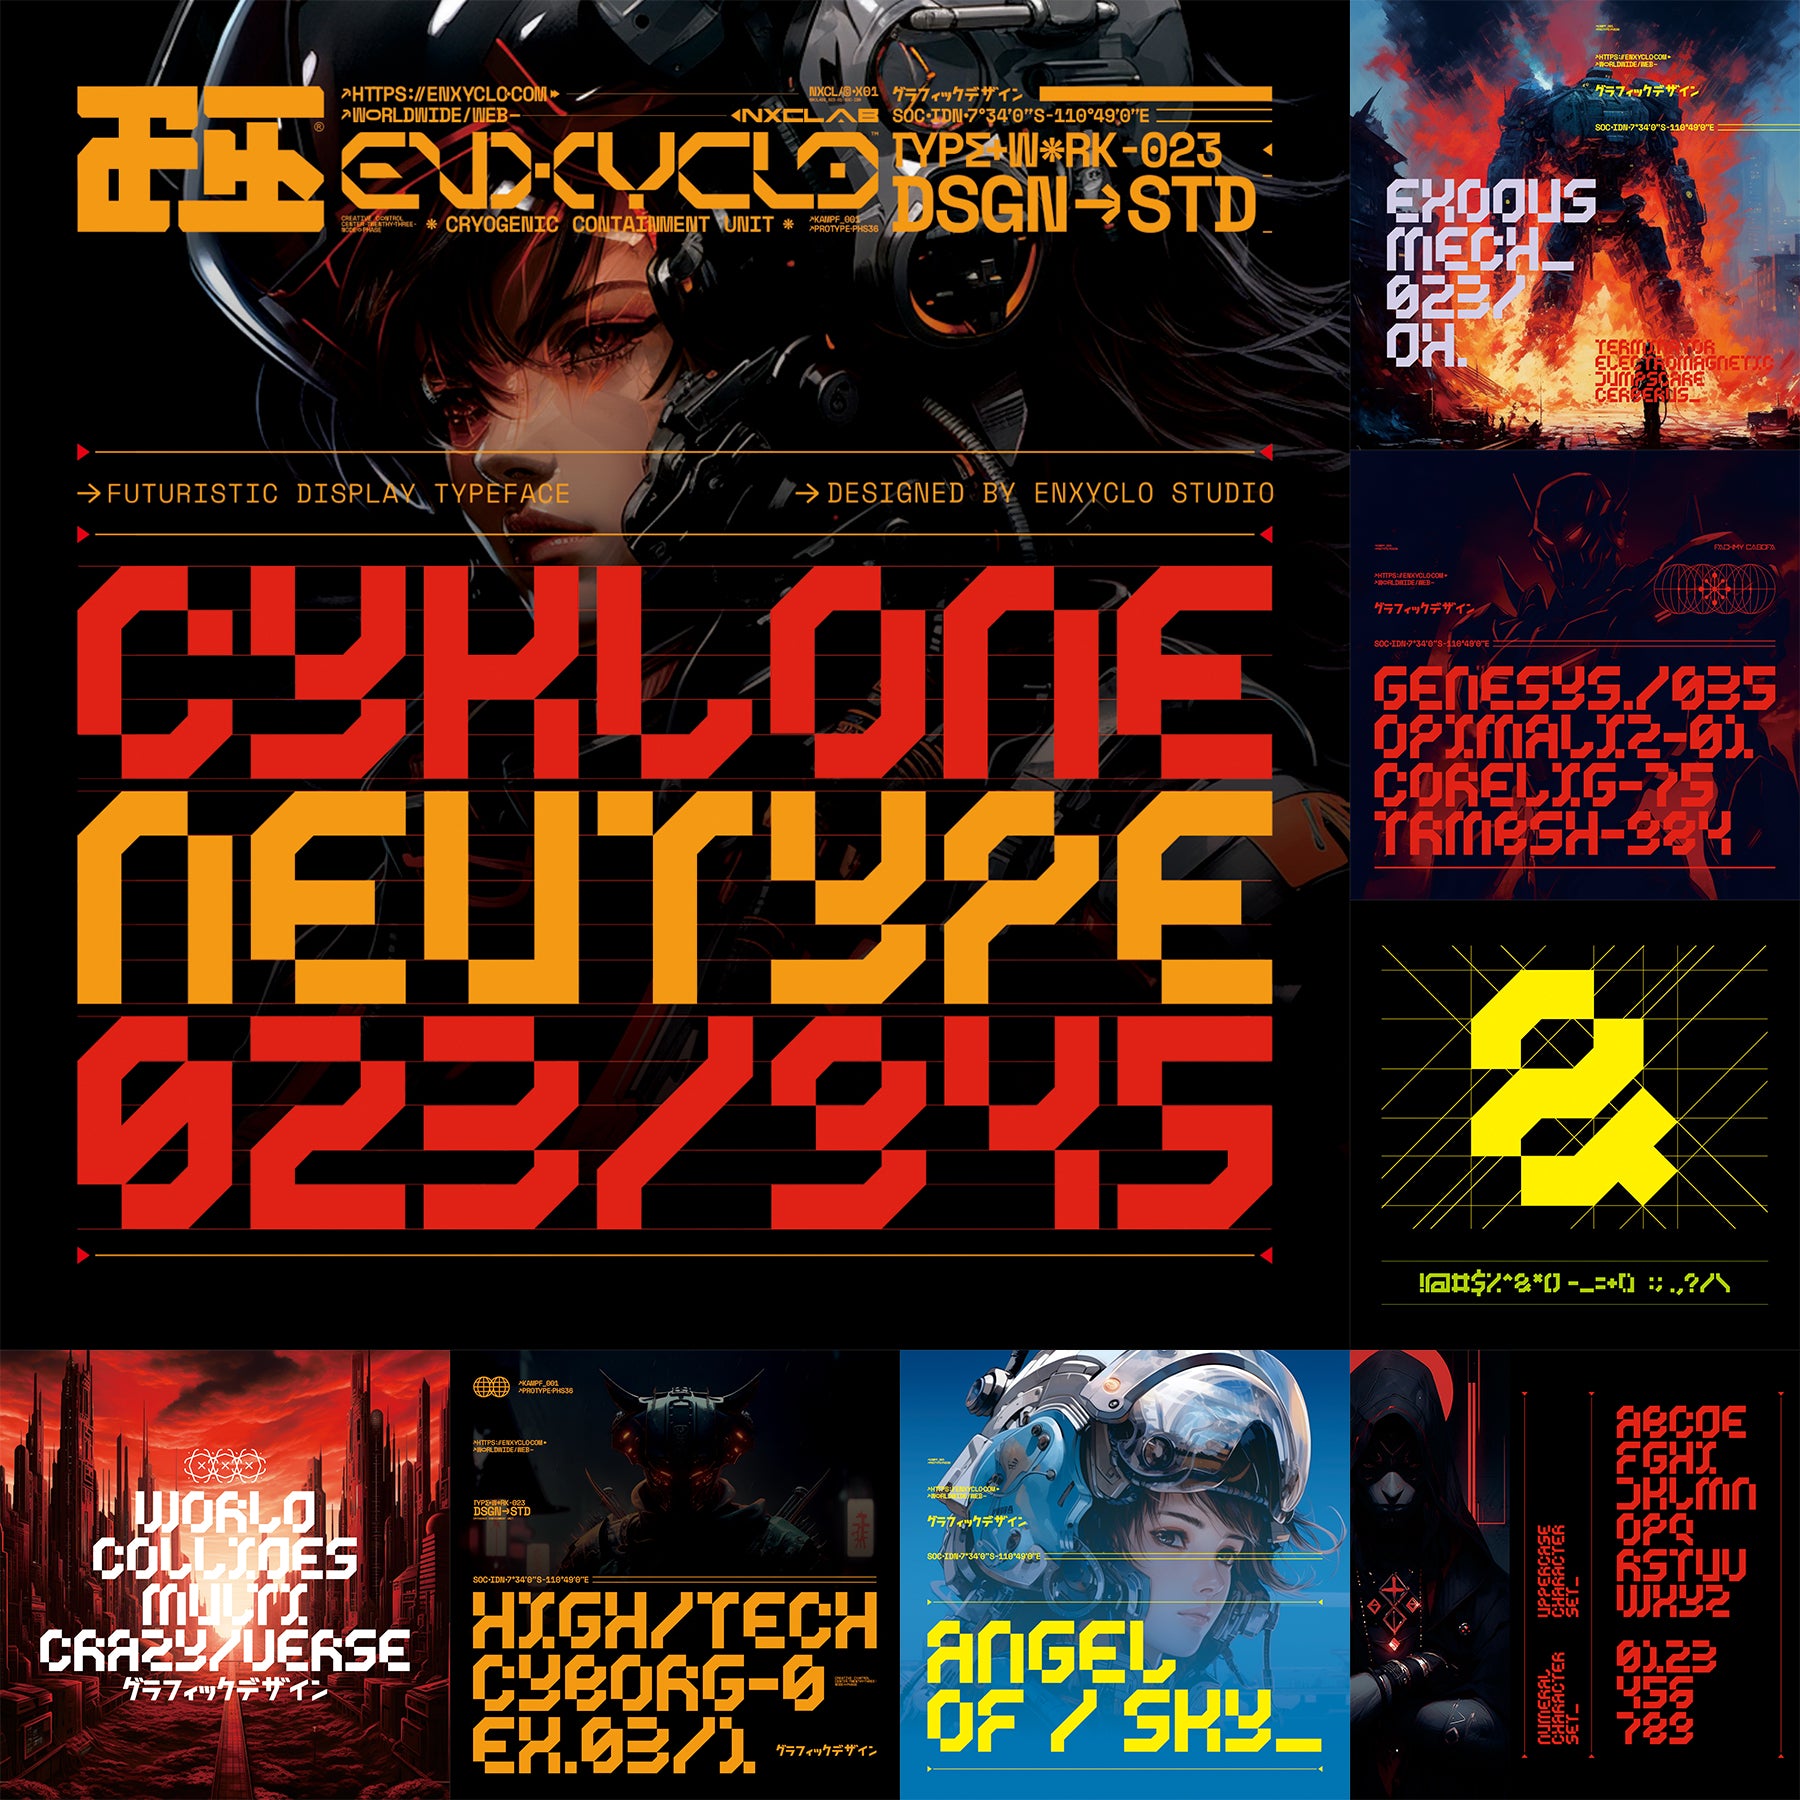 Cyberpunk Futuristic Font Bundle